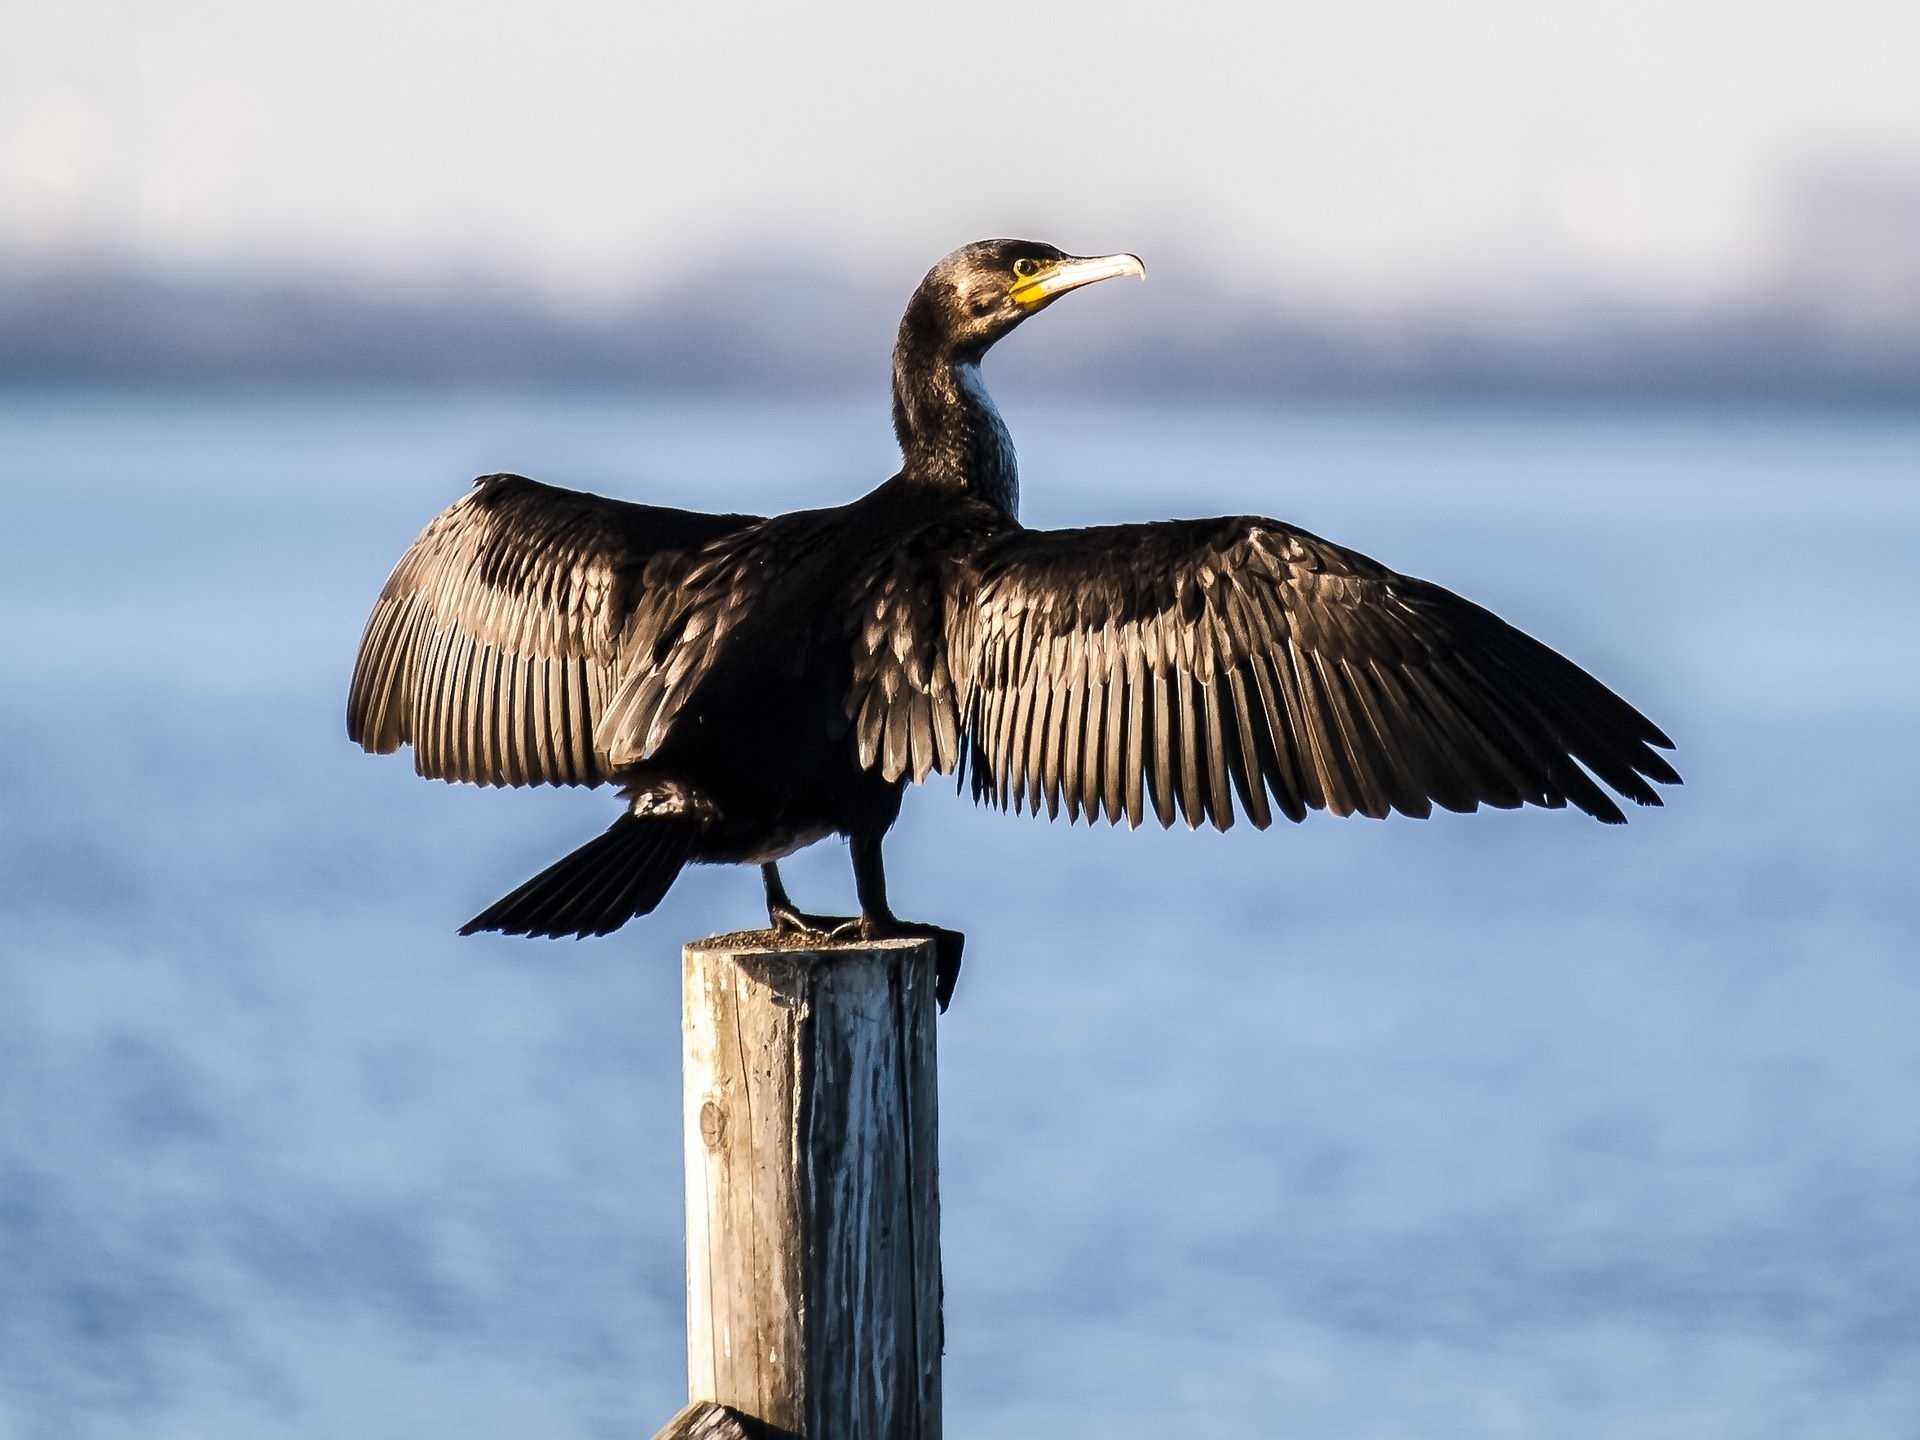 Nuo 2025-ųjų keisis kormoranų reguliavimo taisyklės, sako agentūros atstovas